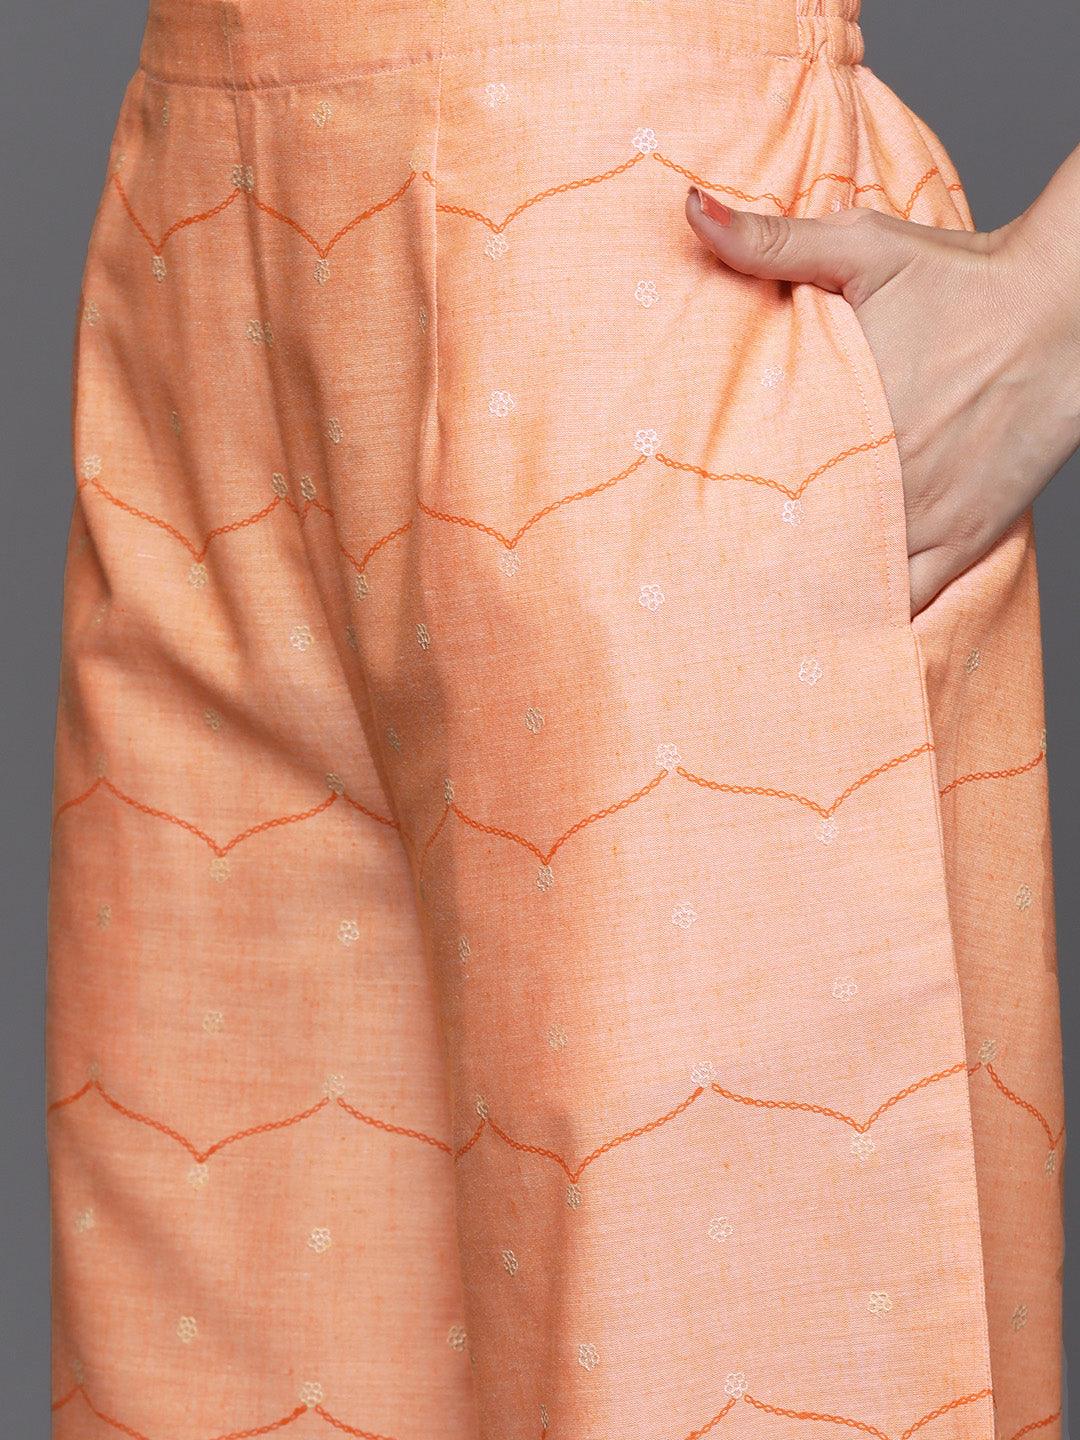 Orange Printed Cotton Suit Set - Libas